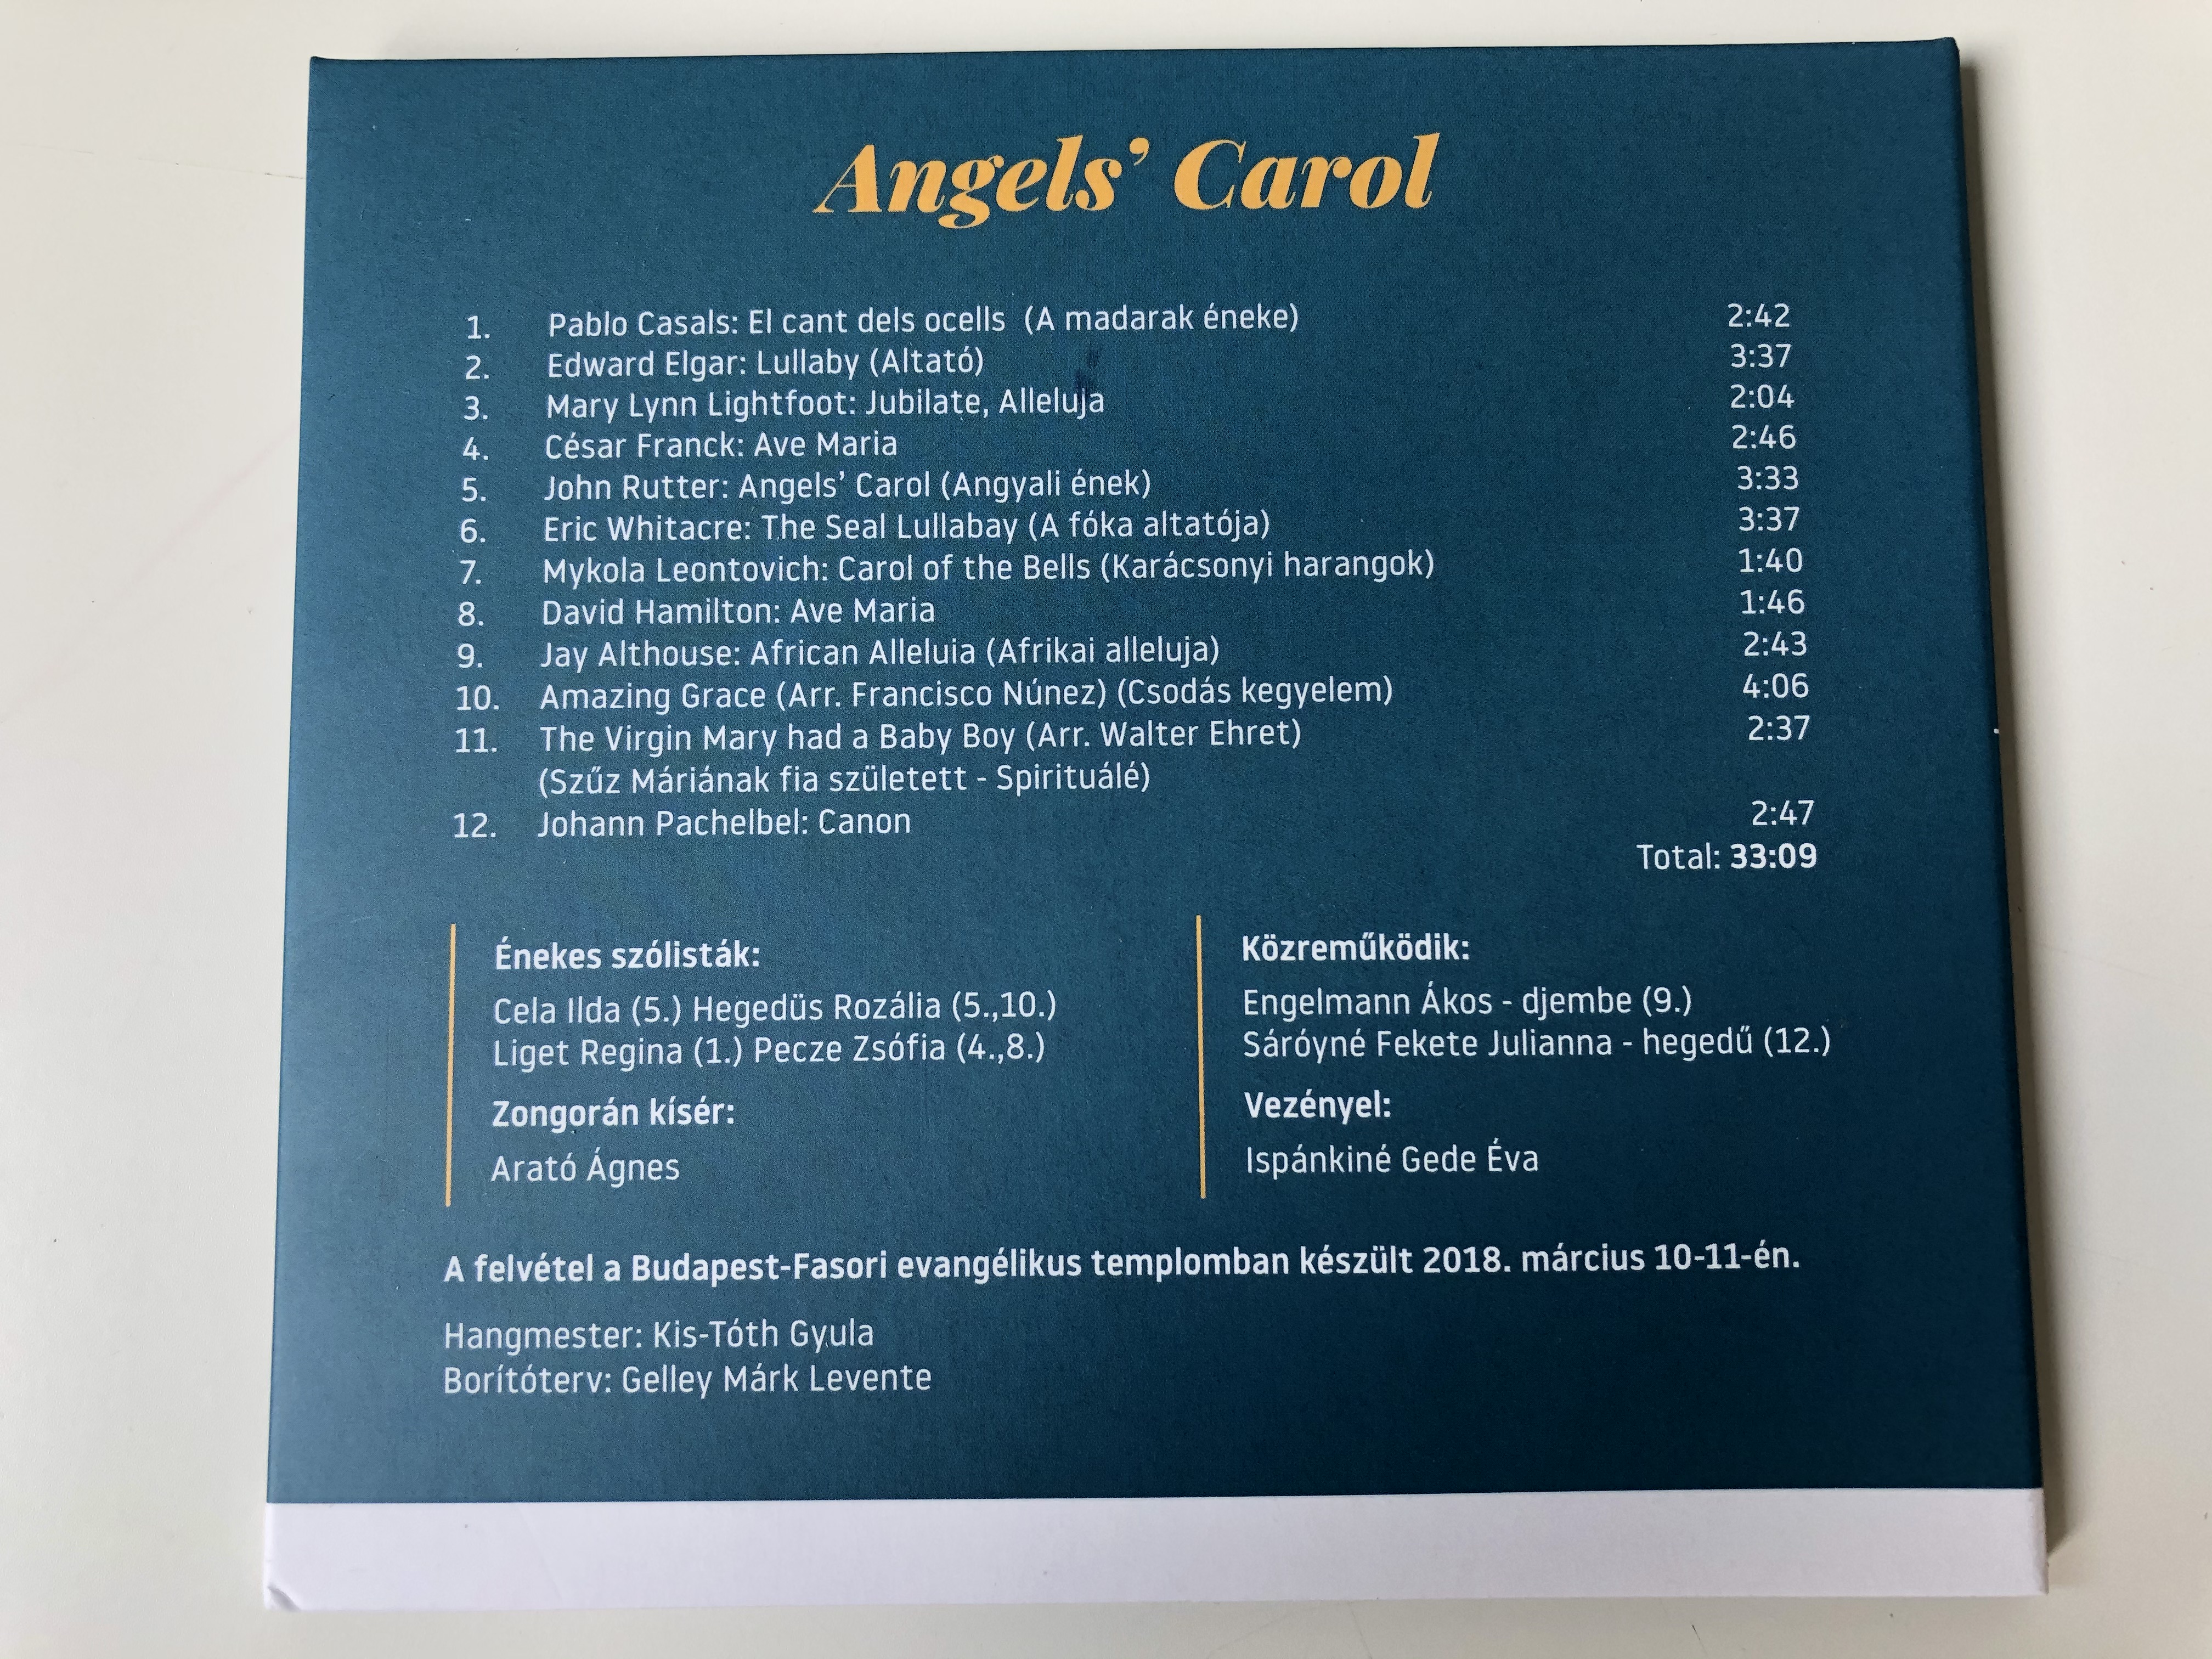 toth-aladar-noikar-angels-carol-conducted-by-gede-eva-audio-cd-2018-6-.jpg